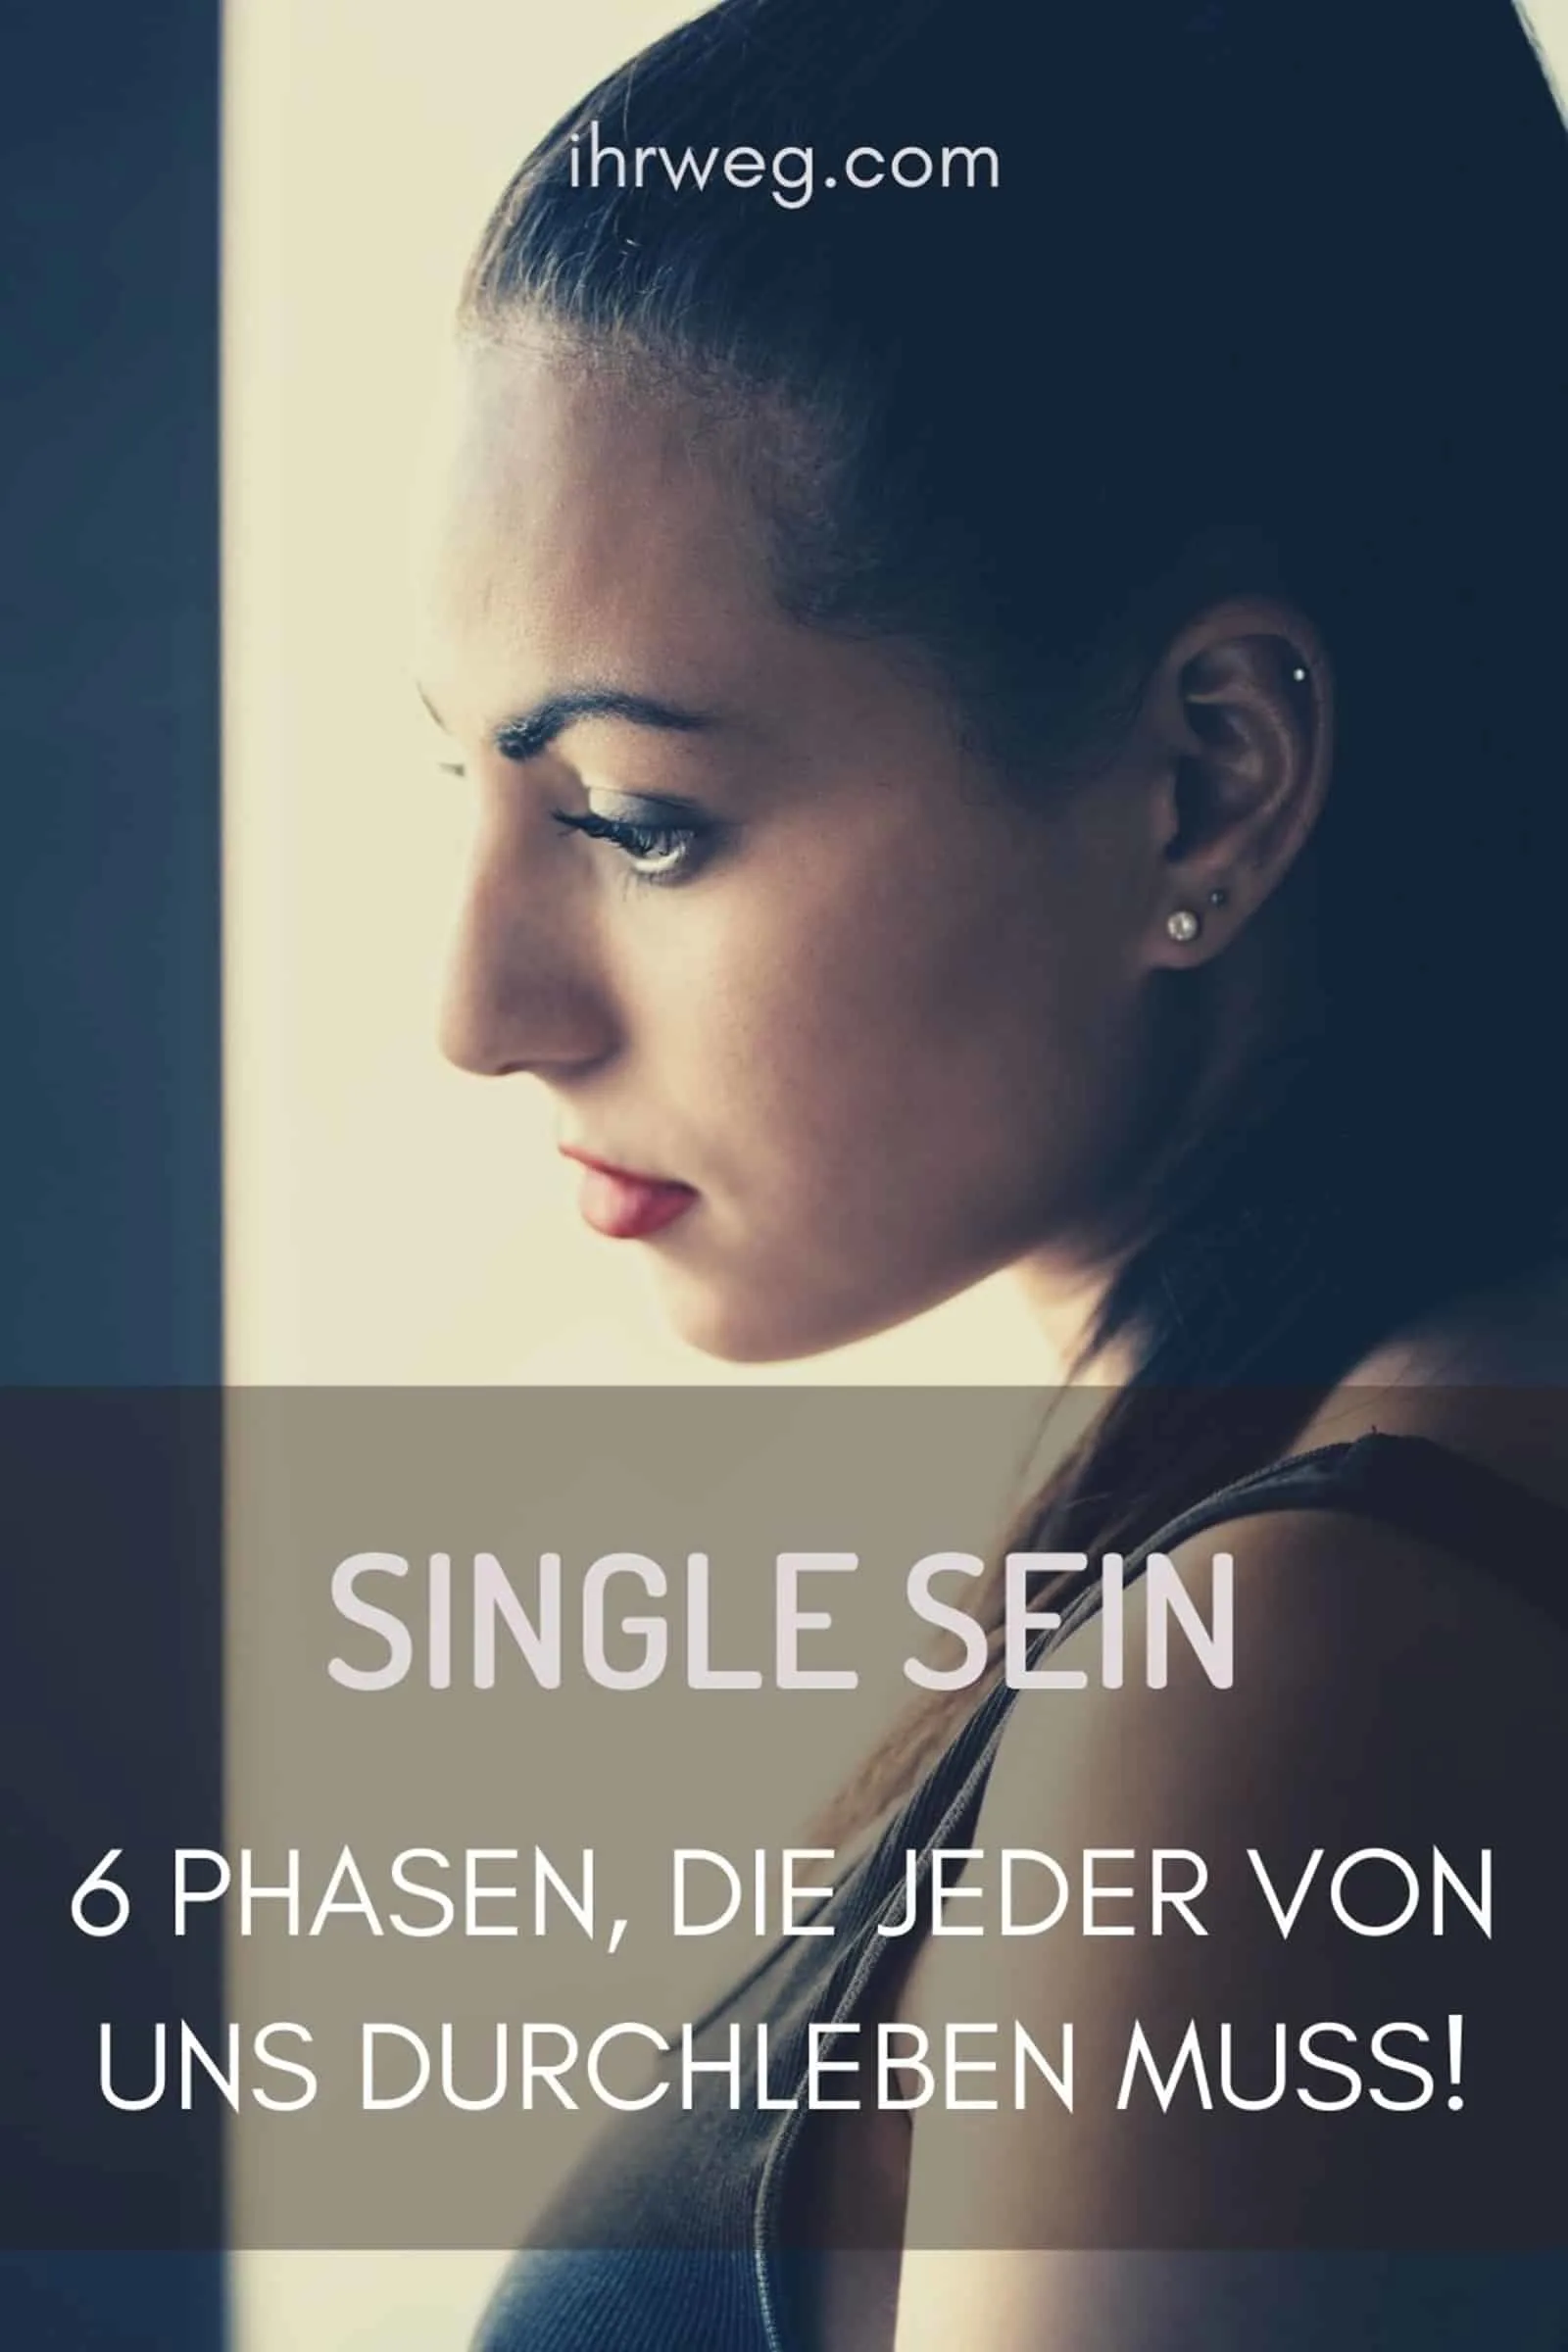 Single Sein: 6 Phasen, Die Jeder Von Uns Durchleben Muss!